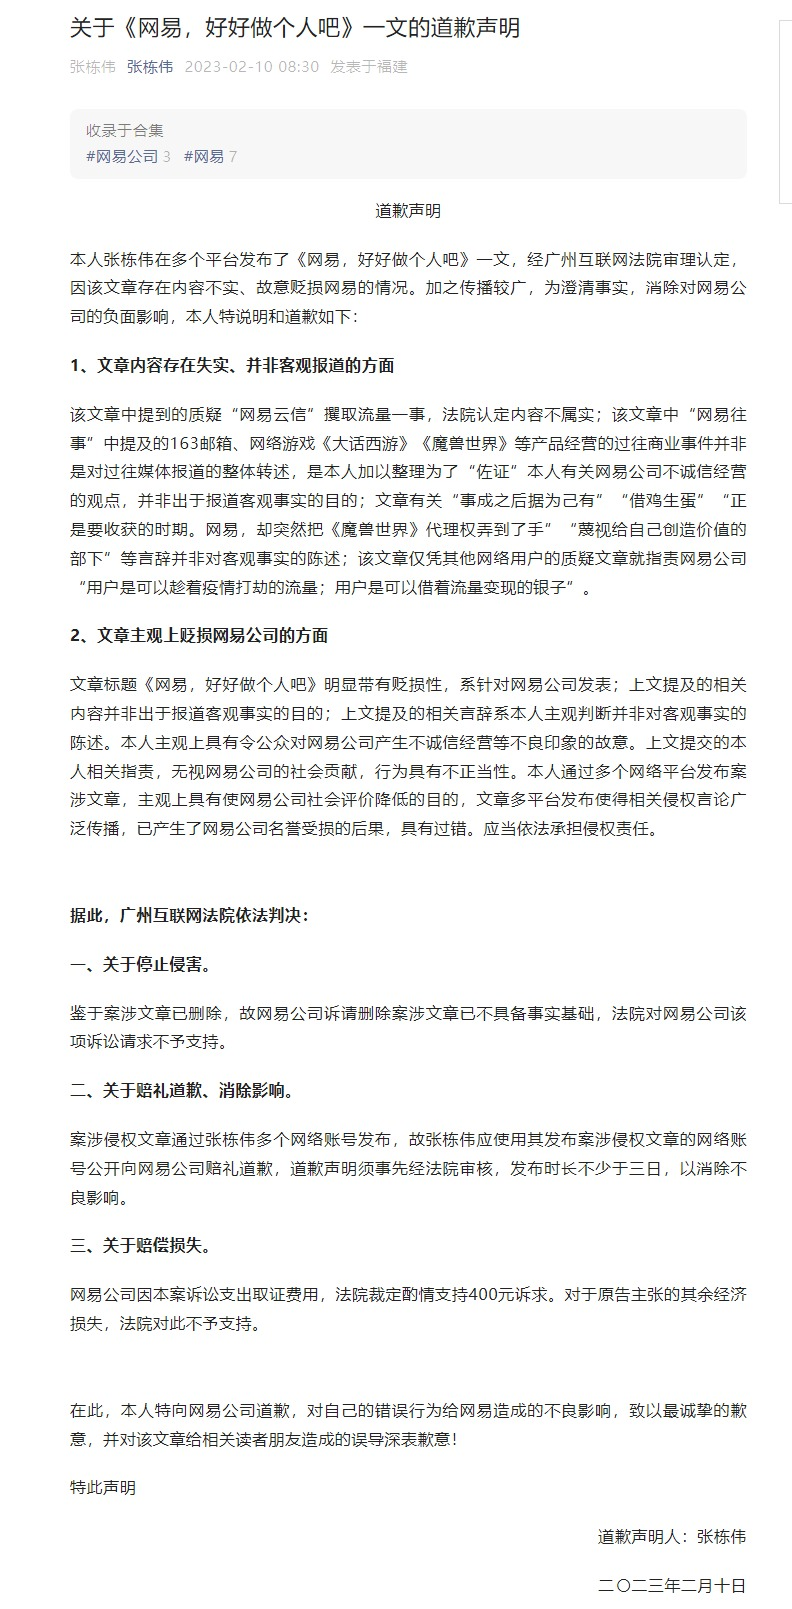 Twitter|广州互联网法院判决自媒体侵害网易声誉 张栋伟向网易公开赔礼道歉